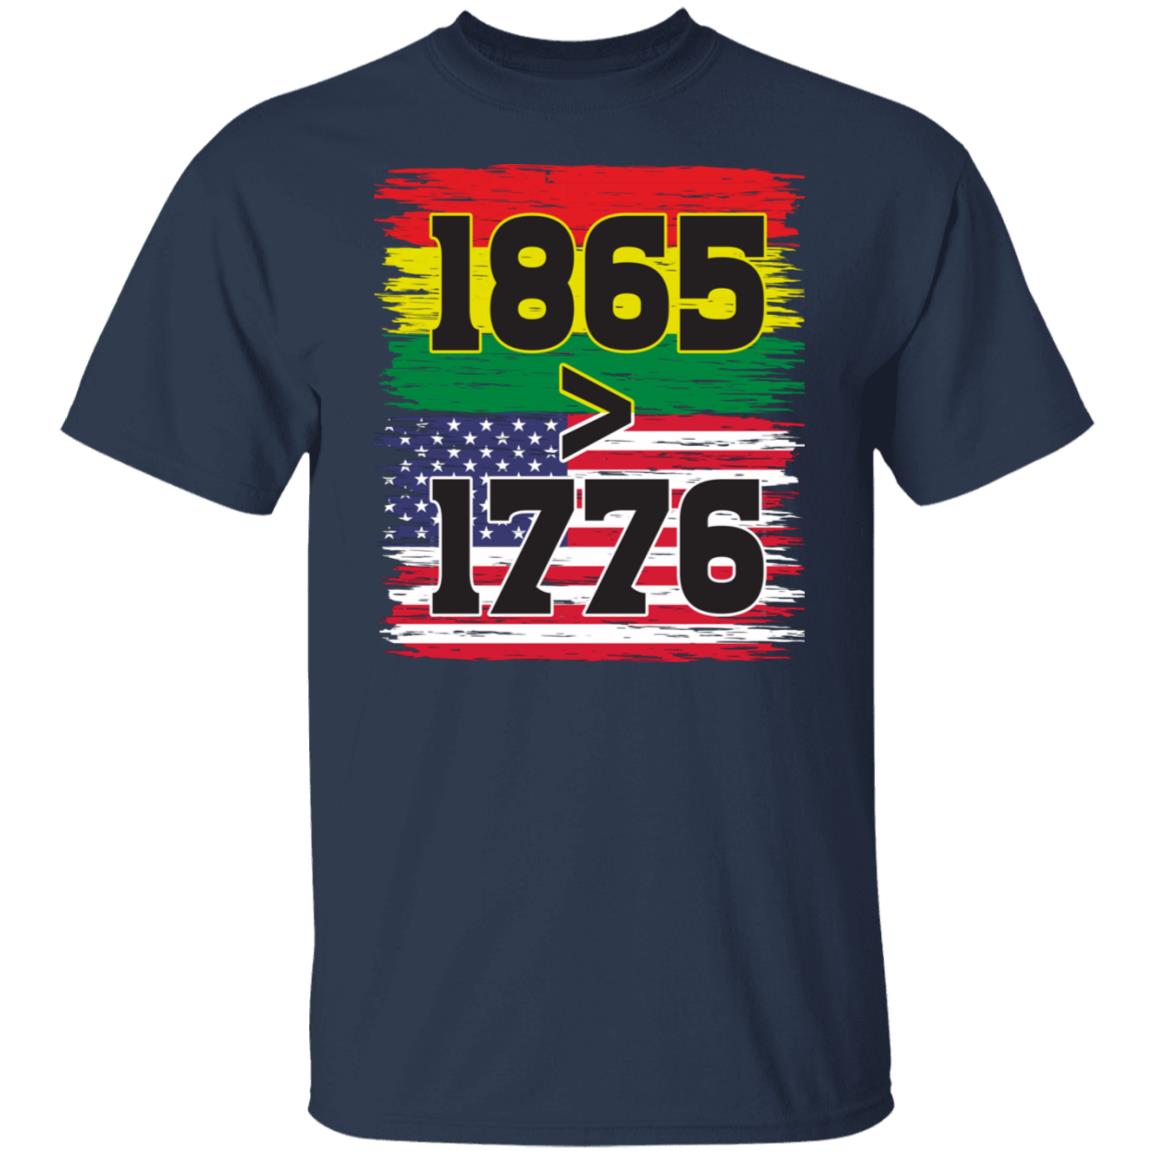 1865 > 1976 Juneteenth T-shirt Apparel Gearment Unisex Tee Navy S